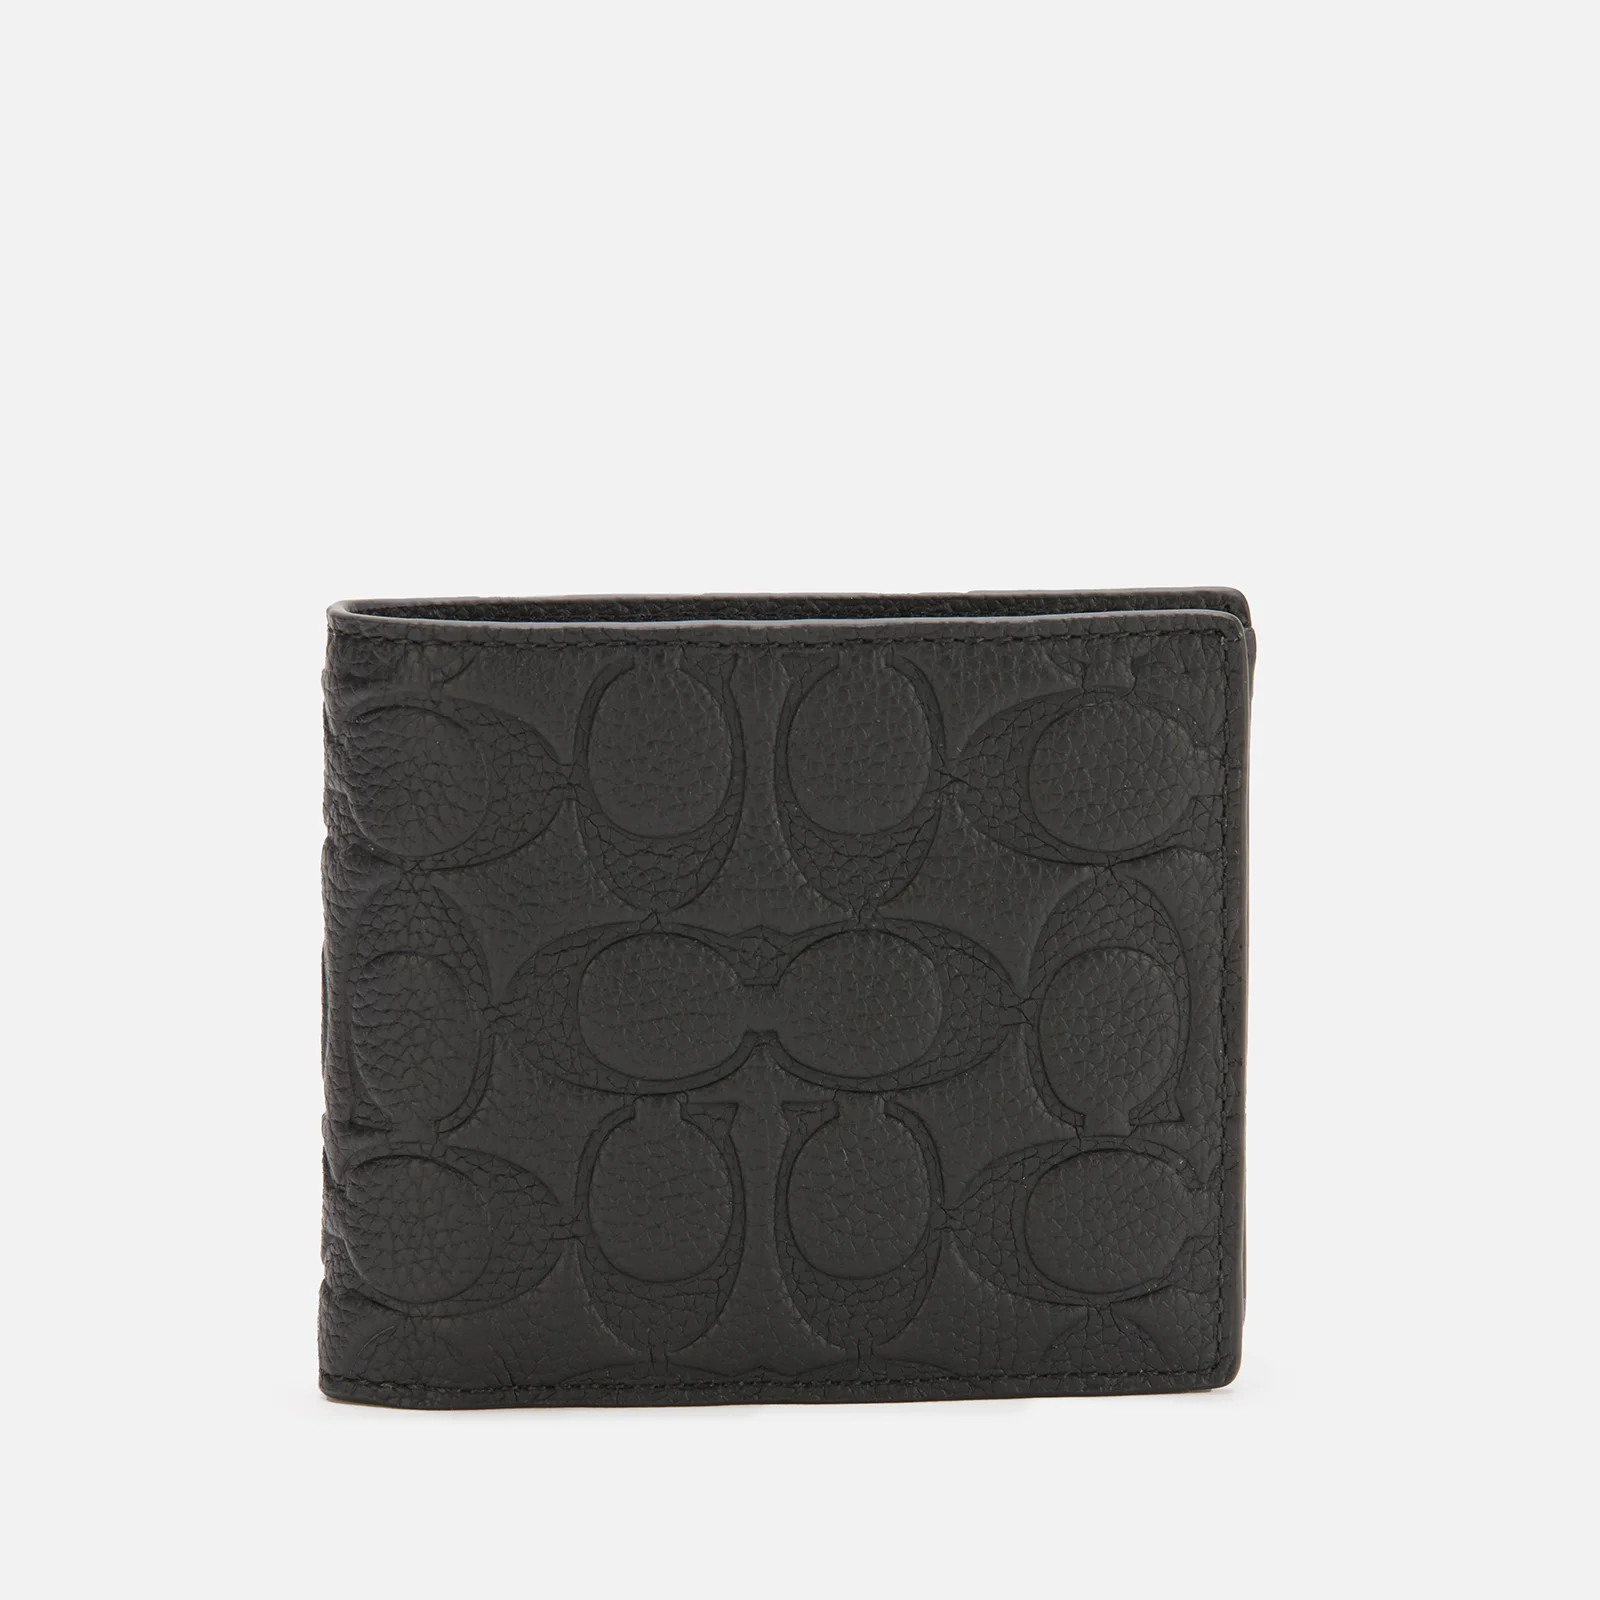 Coach Men's Signature Leather 3-1 Wallet - Black Image 1